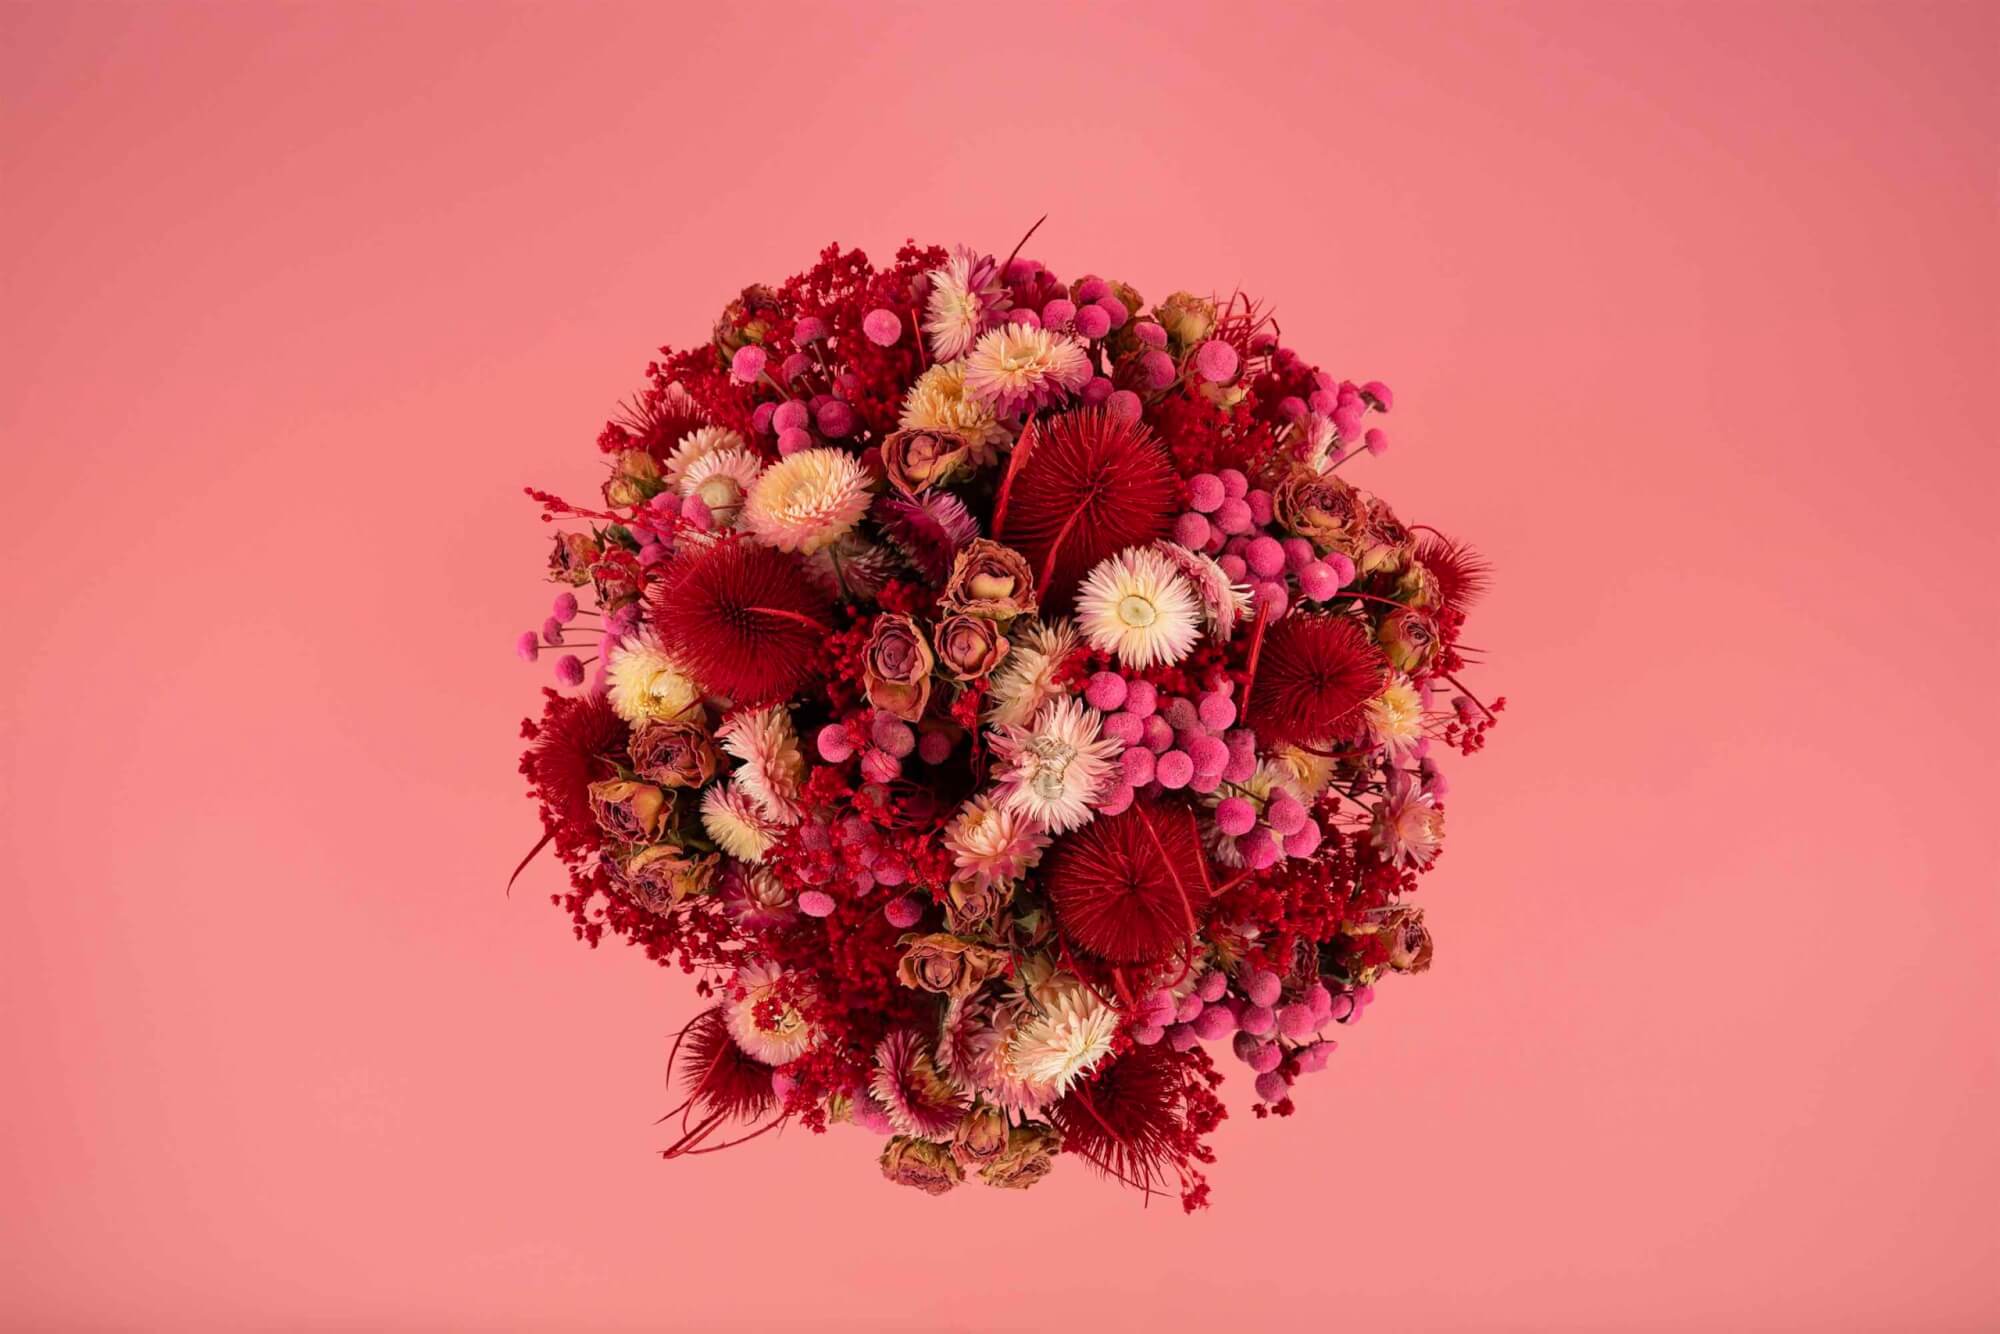 Valenijn bij Agora - Gedroogde bloemen boeket in donkere rood, rosa en wit